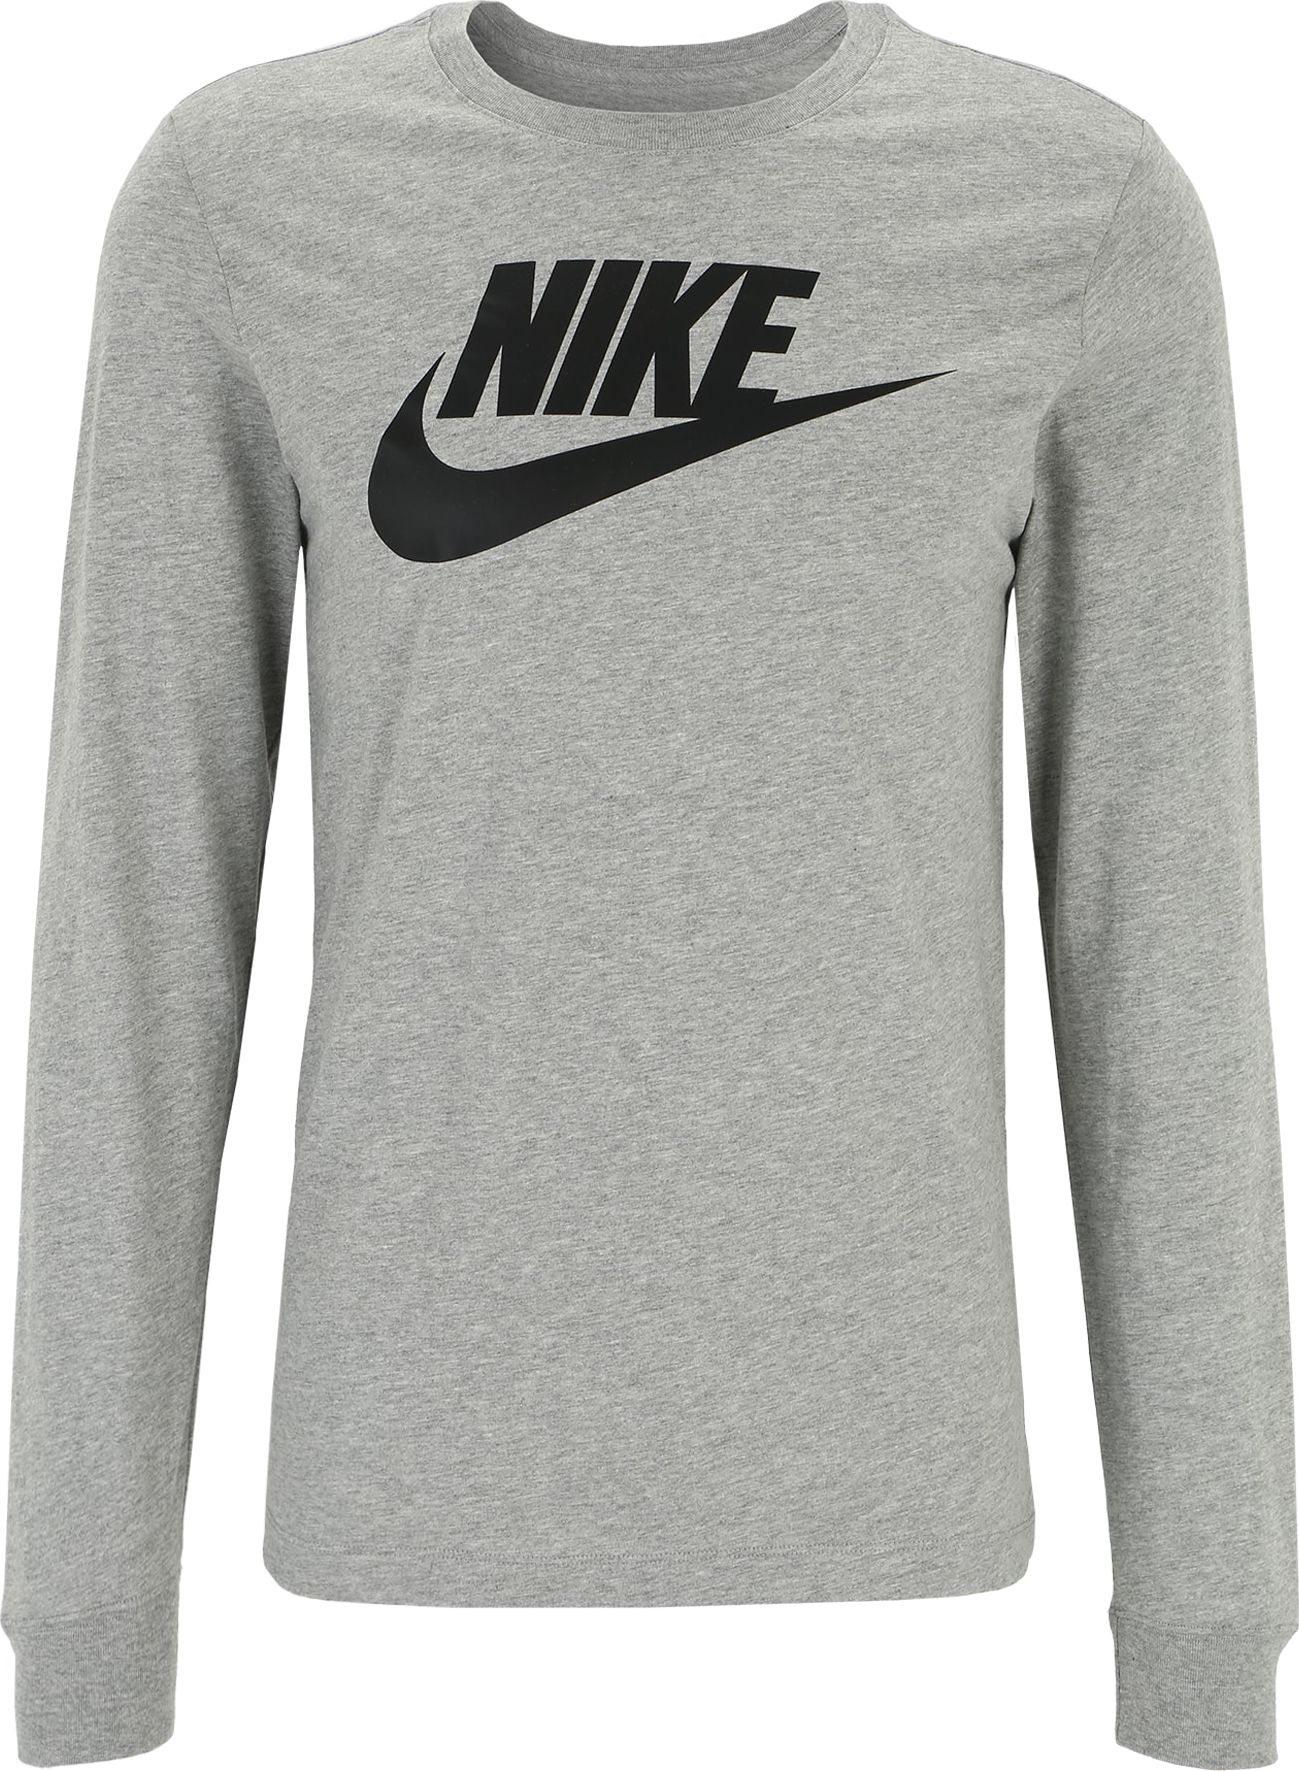 Tričko Nike Sportswear šedá / černá